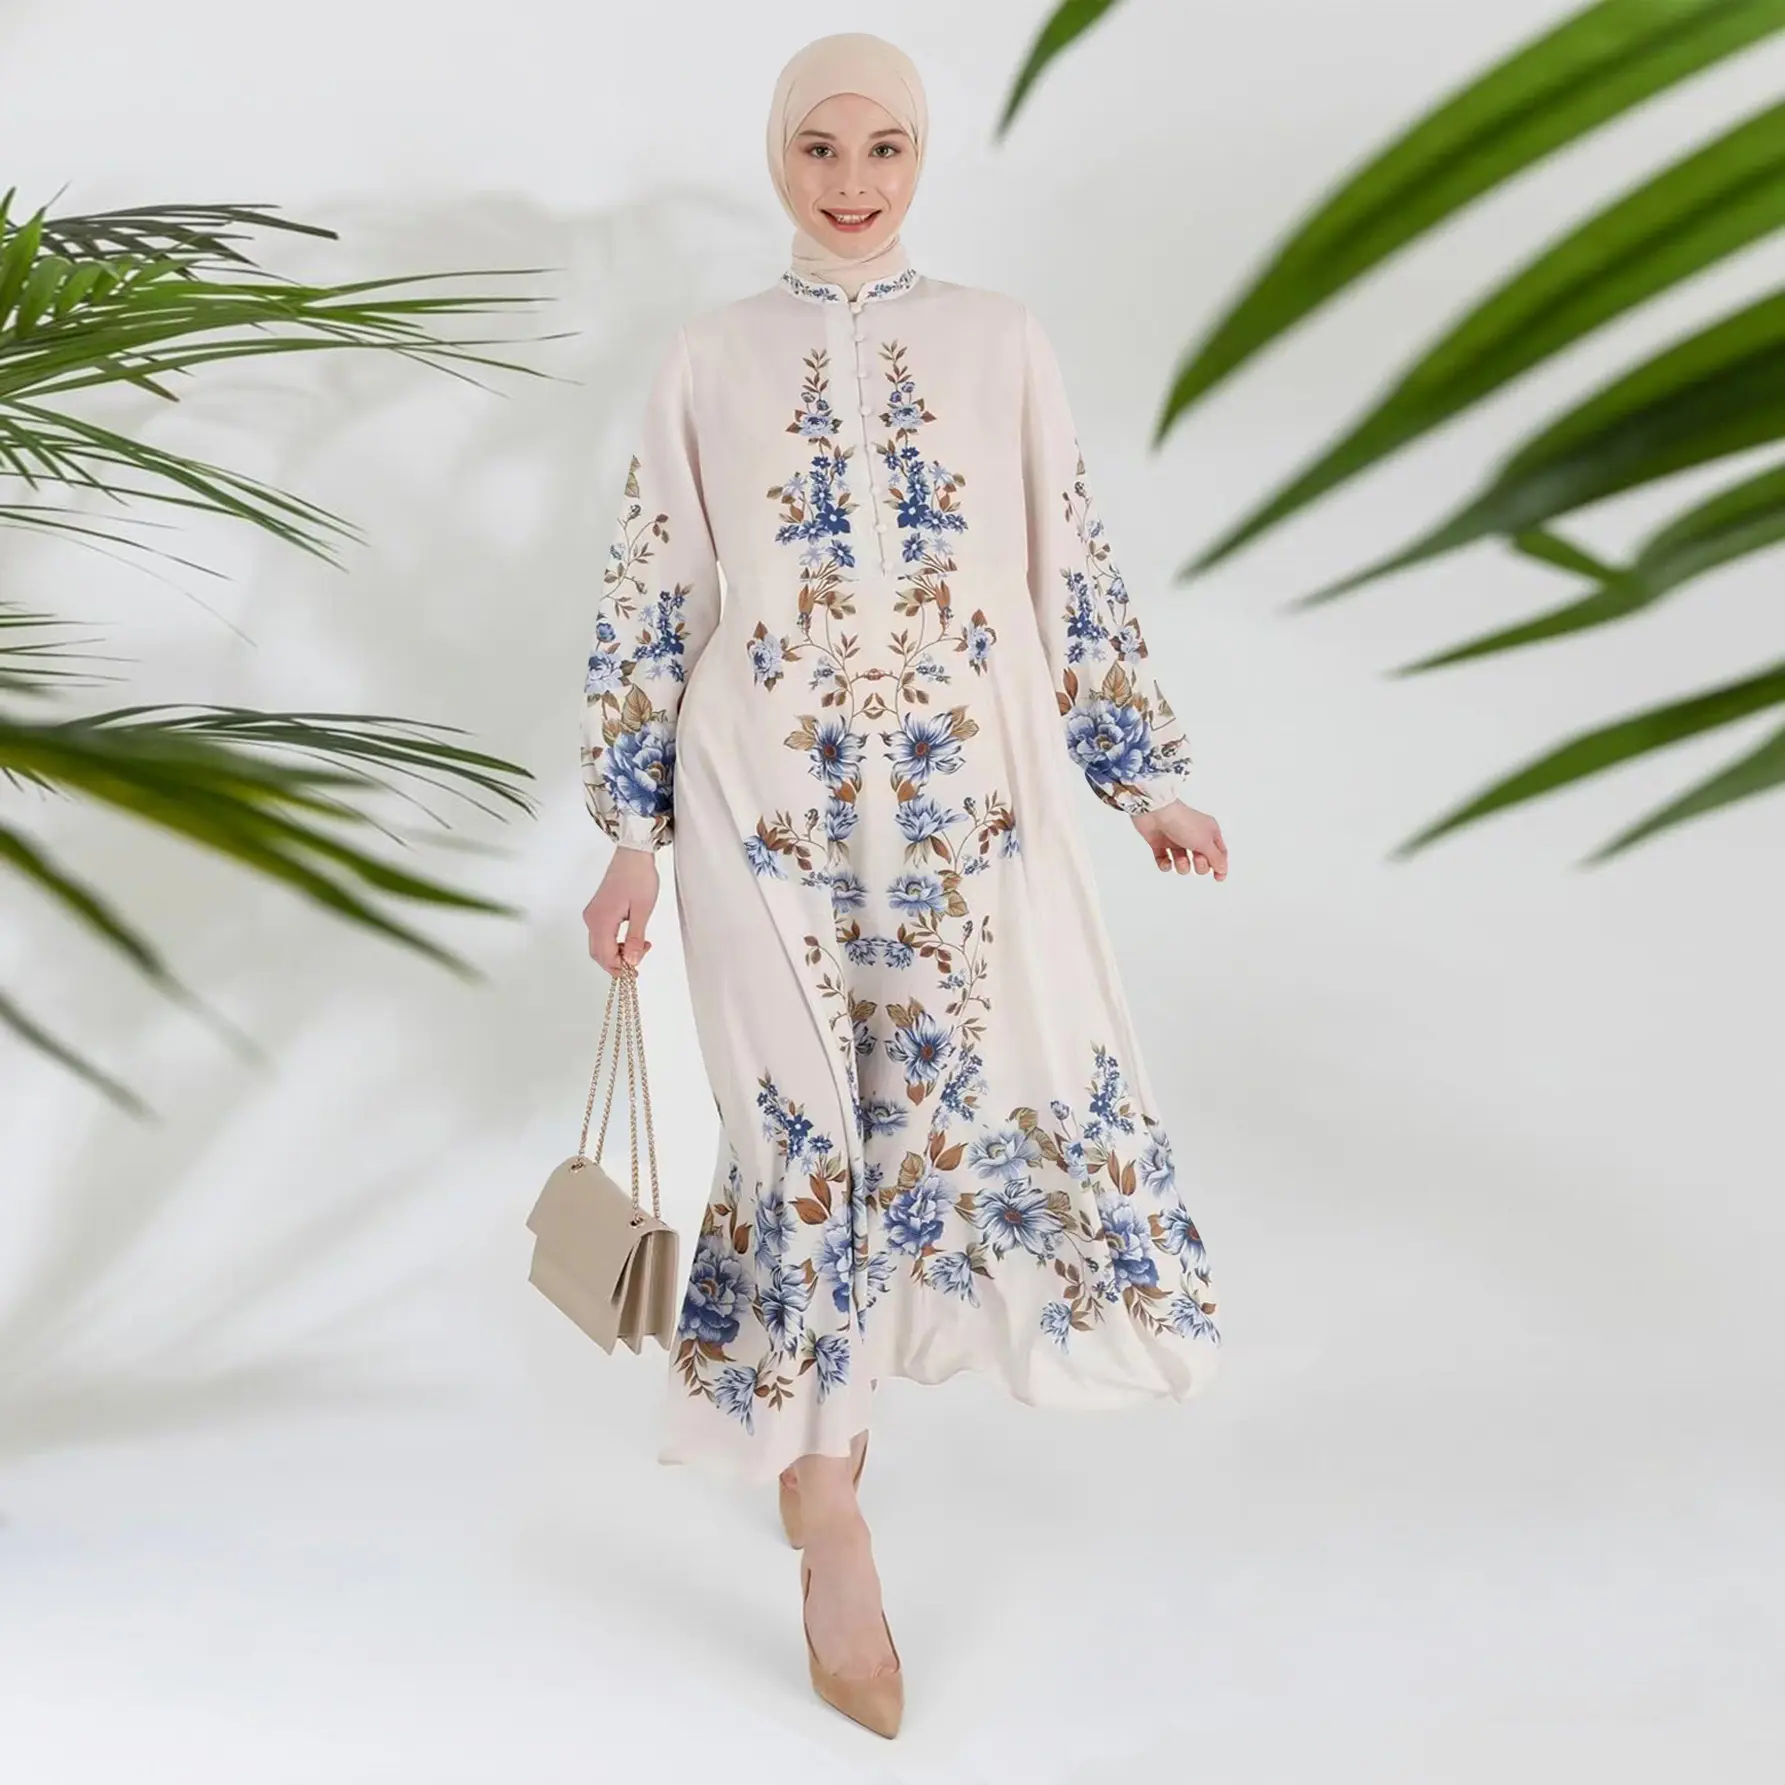 Atacado Nova Chegada Dubai Vestido das Mulheres Planta Floral Impresso Stand Pescoço Solto Montagem Muçulmana Abaya Manga Longa Roupas Femininas